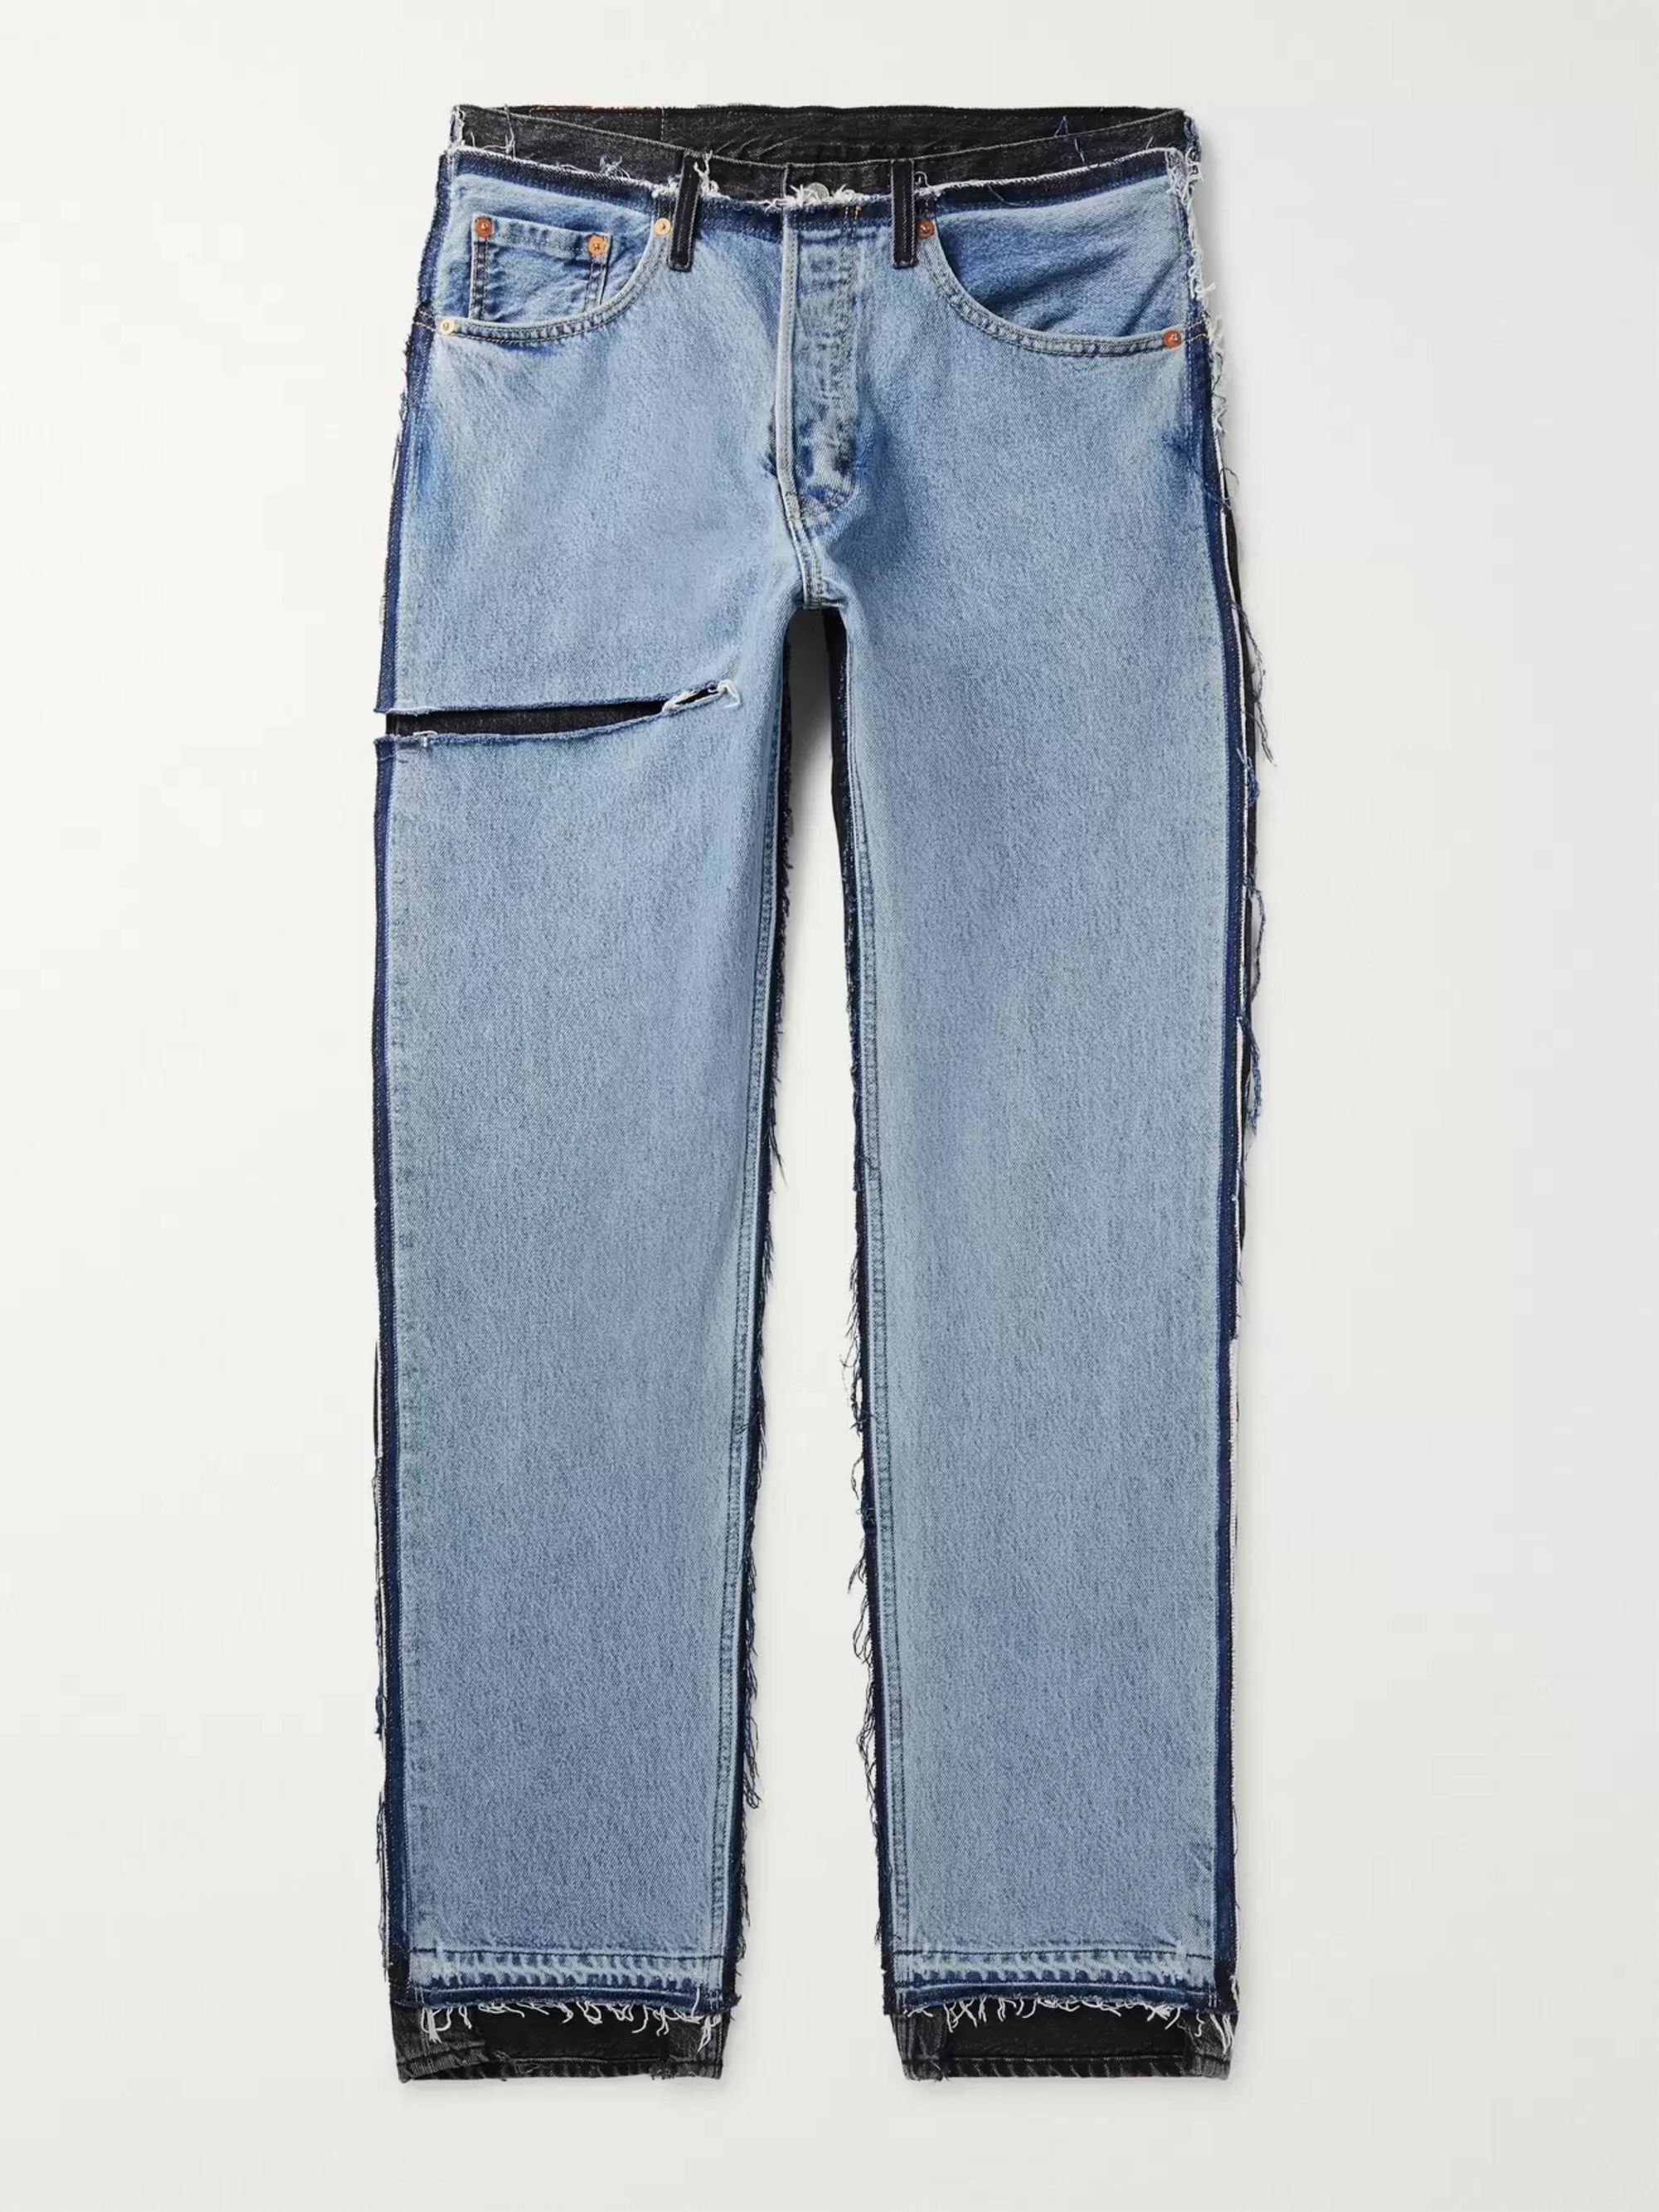 levis blue denim jeans